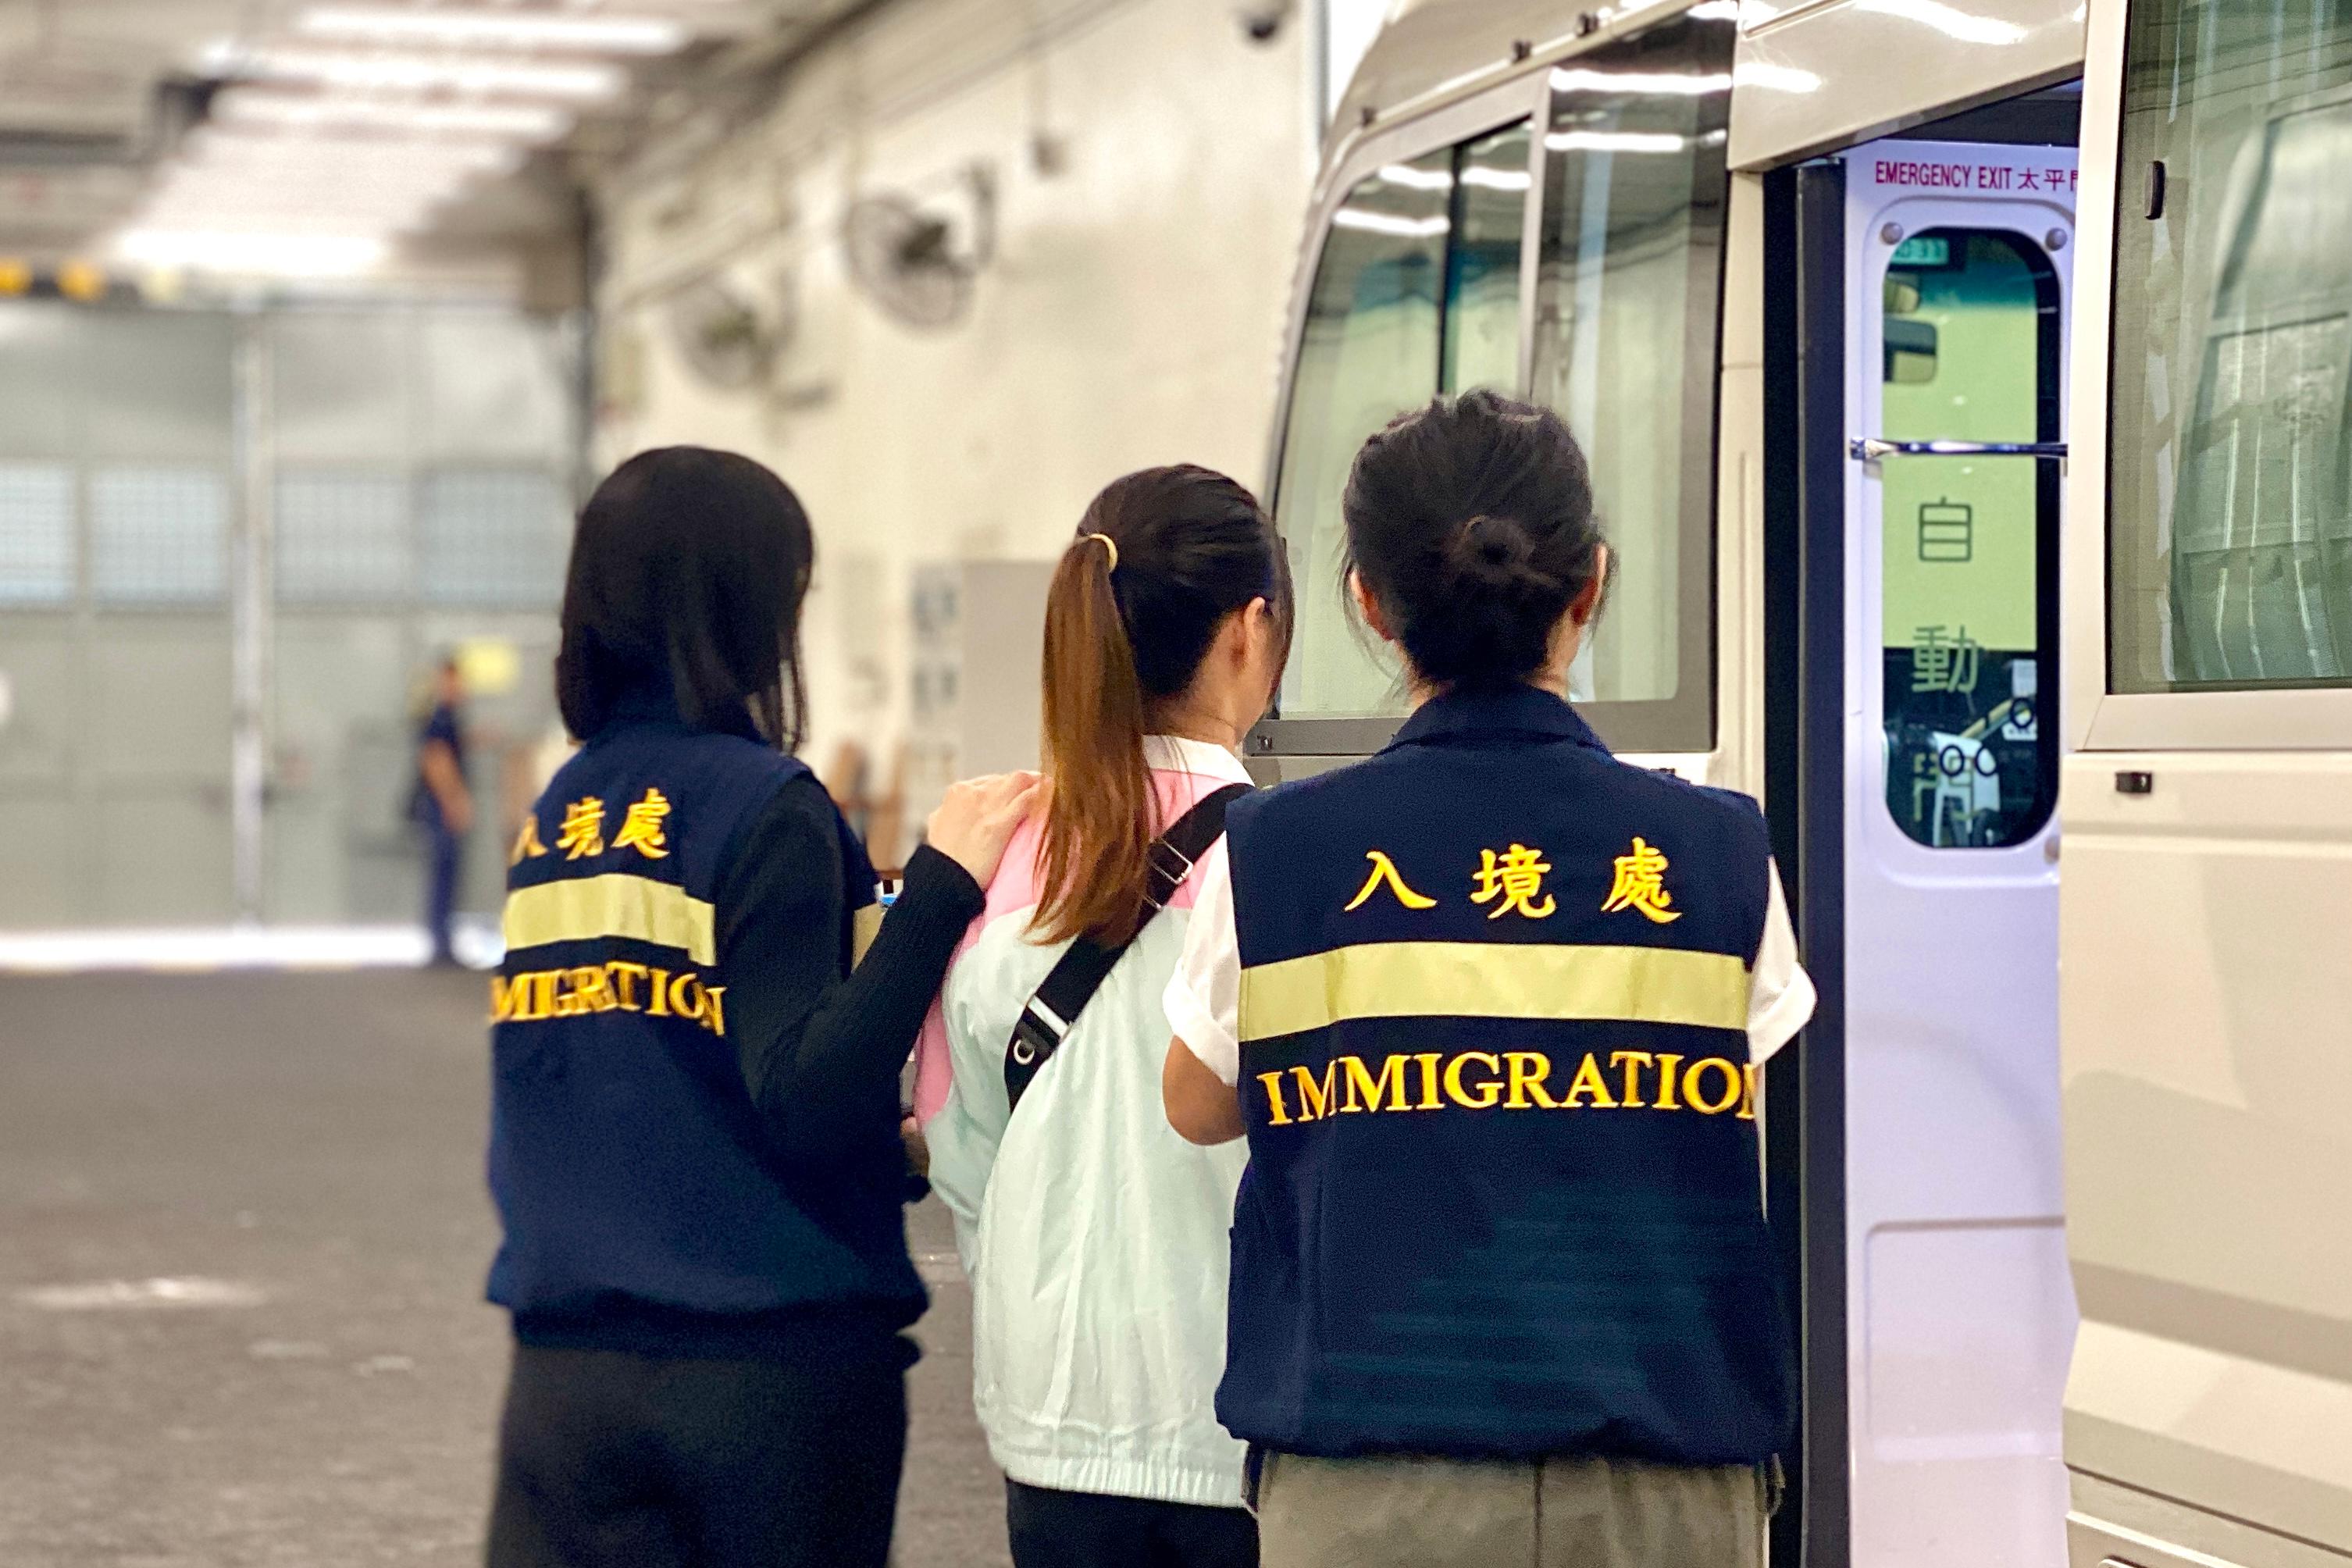 入境事务处（入境处）今日（九月二十八日）执行遣送行动，将23名越南籍非法入境者遣返越南。图示被遣返人士在入境处人员押送下离开羁押地点前往机场。